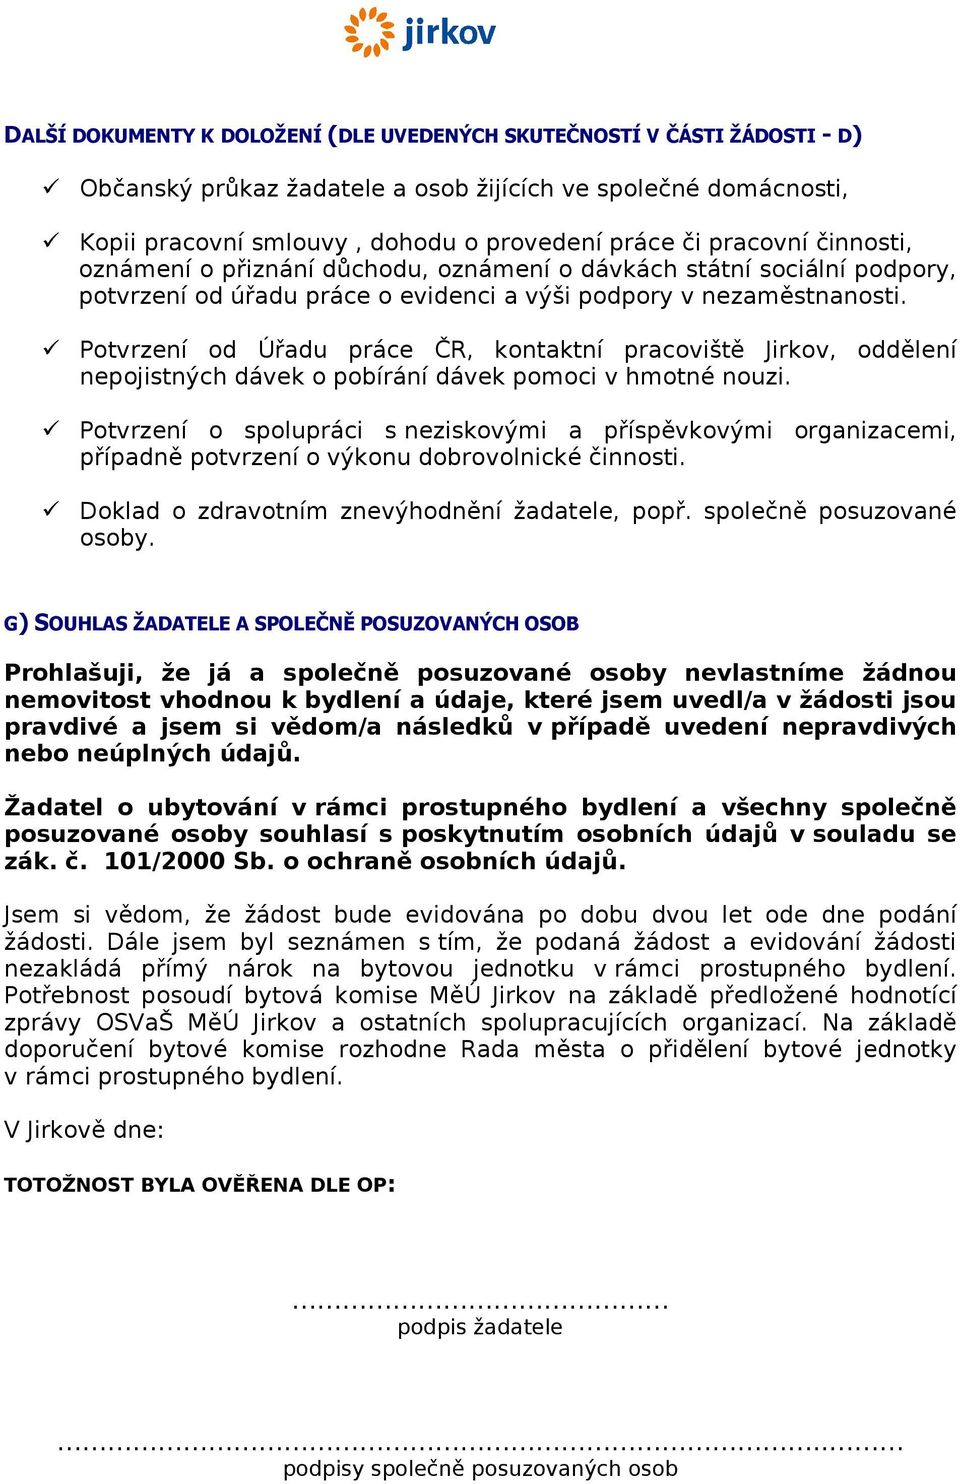 Potvrzení od Úřadu práce ČR, kontaktní pracoviště Jirkov, oddělení nepojistných dávek o pobírání dávek pomoci v hmotné nouzi.